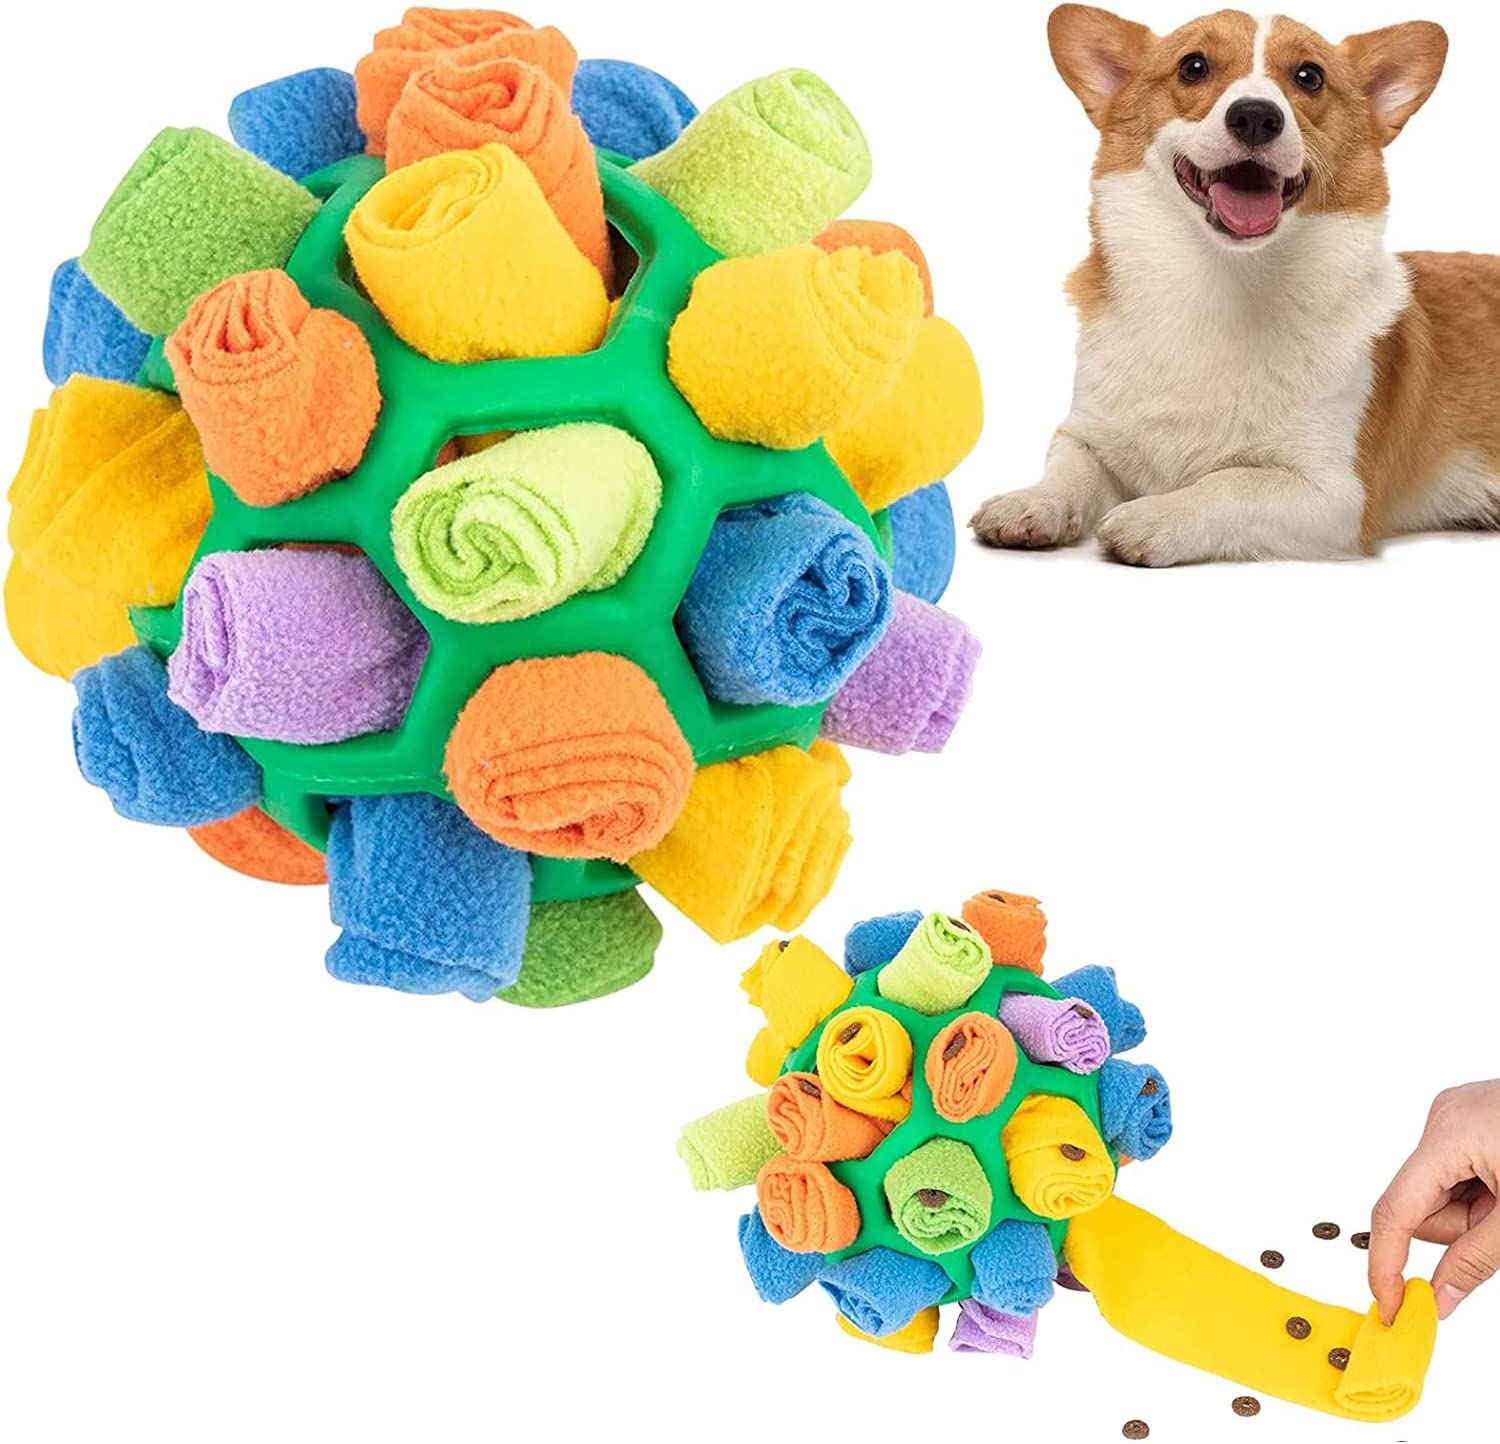 【餌入れ犬おもちゃ】犬おもちゃのには餌を隠したり、犬が匂いを嗅いでおもちゃの中に隠されたおやつを見つけることは、彼らのノーズワークを大いに刺激し、そこから大きな満足感を得てIQを開発します。 【安全無毒な素材】犬知育玩具の材料は安全で無毒な良質な絨毛を採用し、高強度と弾性回復能力があり、耐久性があり、柔らかな手触りです。かわいいペットと遊ぶとても幸せで幸せなことです！ 【早食い防止】犬の餌の時間を効果的に長引かせることができ、食べるスピードをコントロールしながらペットの知能の発達を刺激します。 【素晴らしい贈り物】愛犬は、長時間にわたり肉体的・精神的な刺激を受けることができます。このインタラクティブな犬用おもちゃは愛犬へのプレゼントにぴったりです。